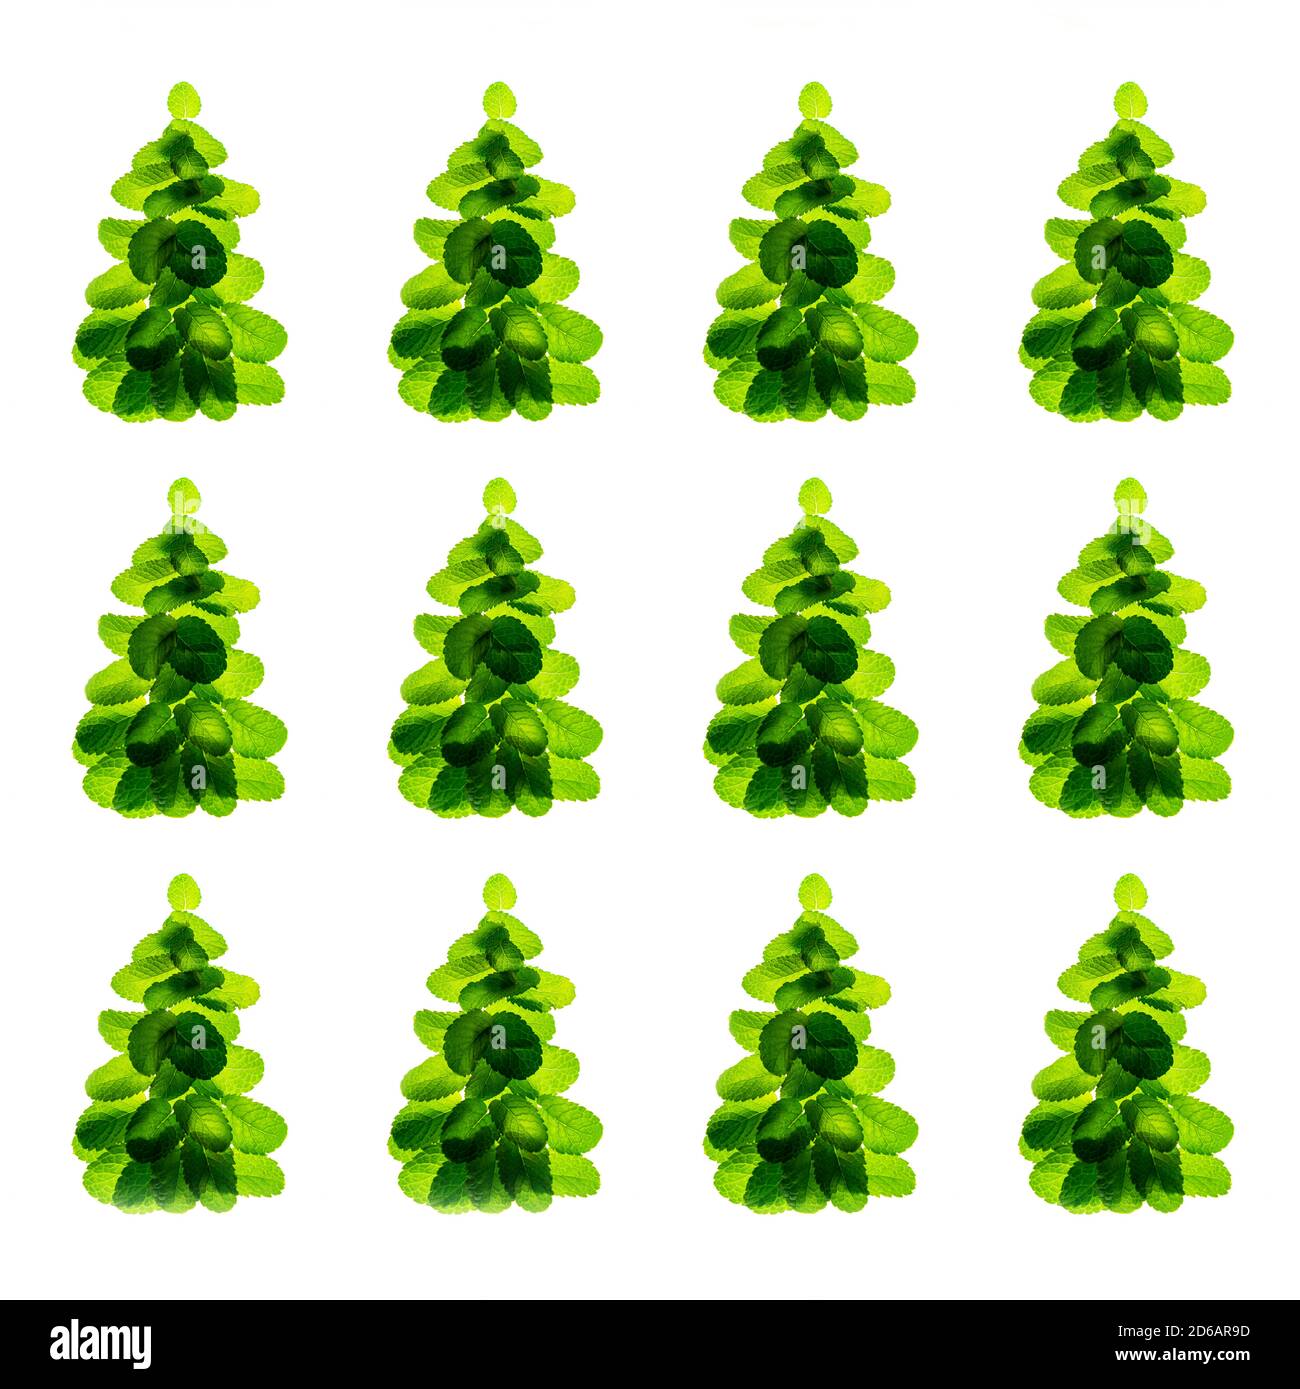 Feiertagsmuster aus frischen grünen Minzblättern als Weihnachtsbaum auf weißem Hintergrund, isoliert. Weihnachten, Neujahr Winter kreatives Konzept. Nahaufnahme, flach liegend, Draufsicht. Stockfoto